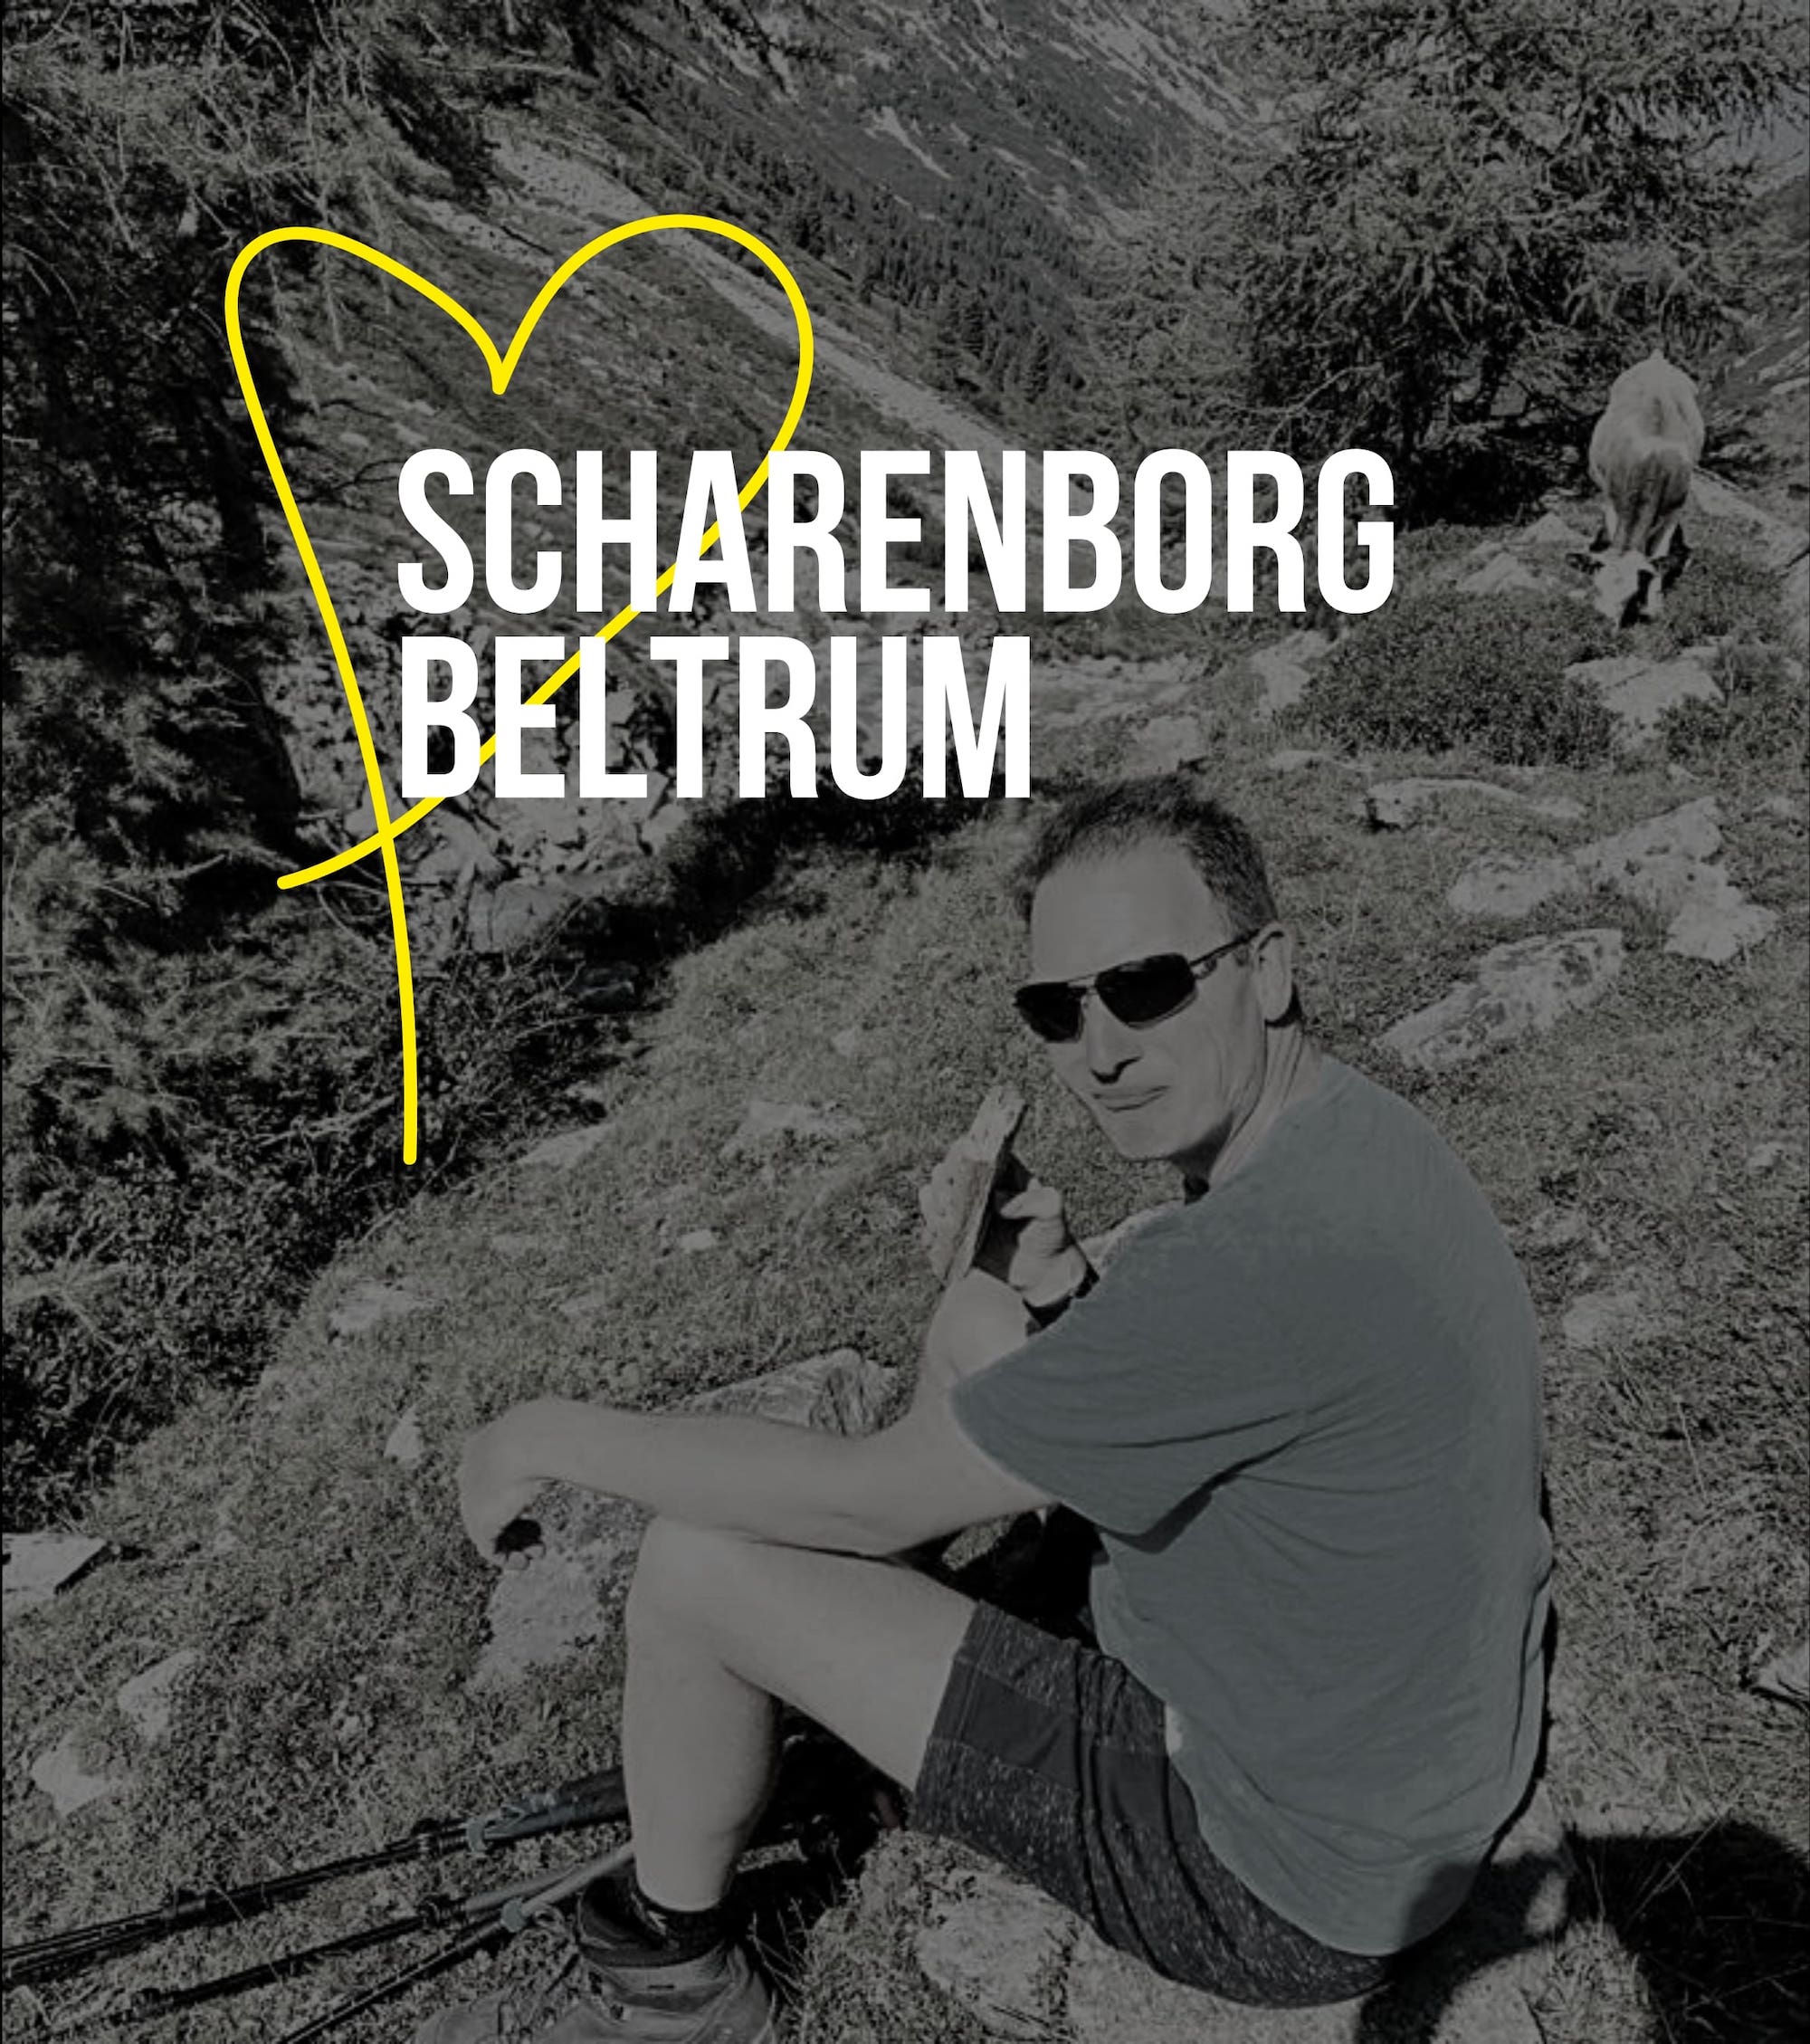 Met de pet rond - Ambassadeur: Scharenborg Beltrum